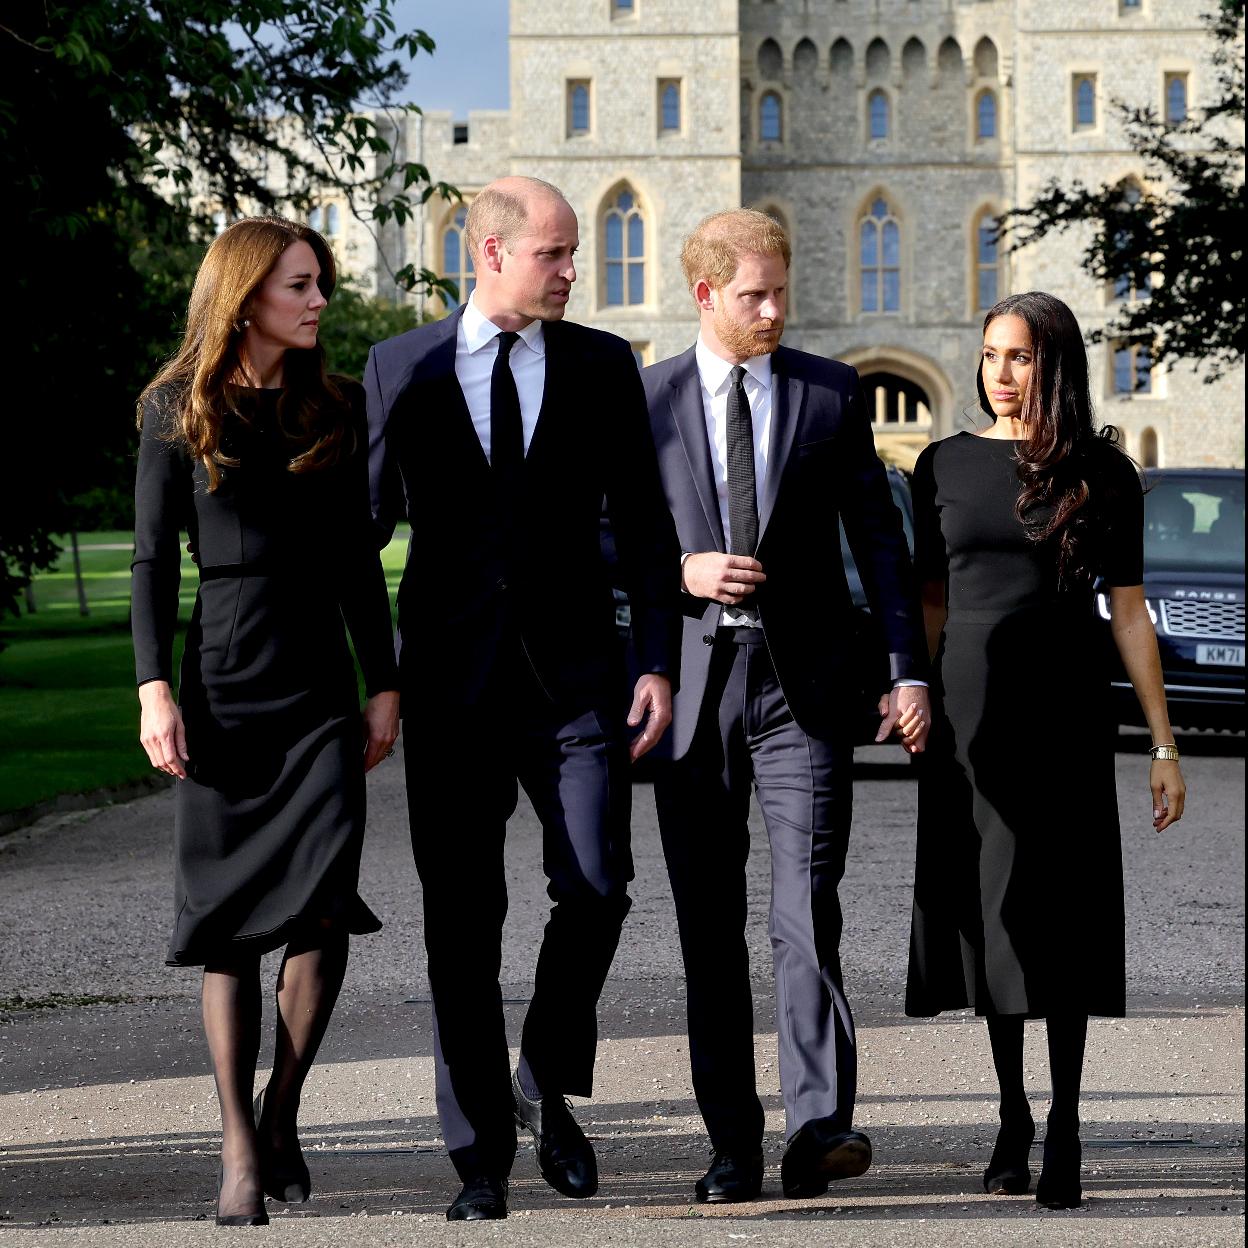 Kate Middleton y Meghan Markle pasean de luto junto al príncipe Guillermo y Harry tras la muerte de Isabel II./getty